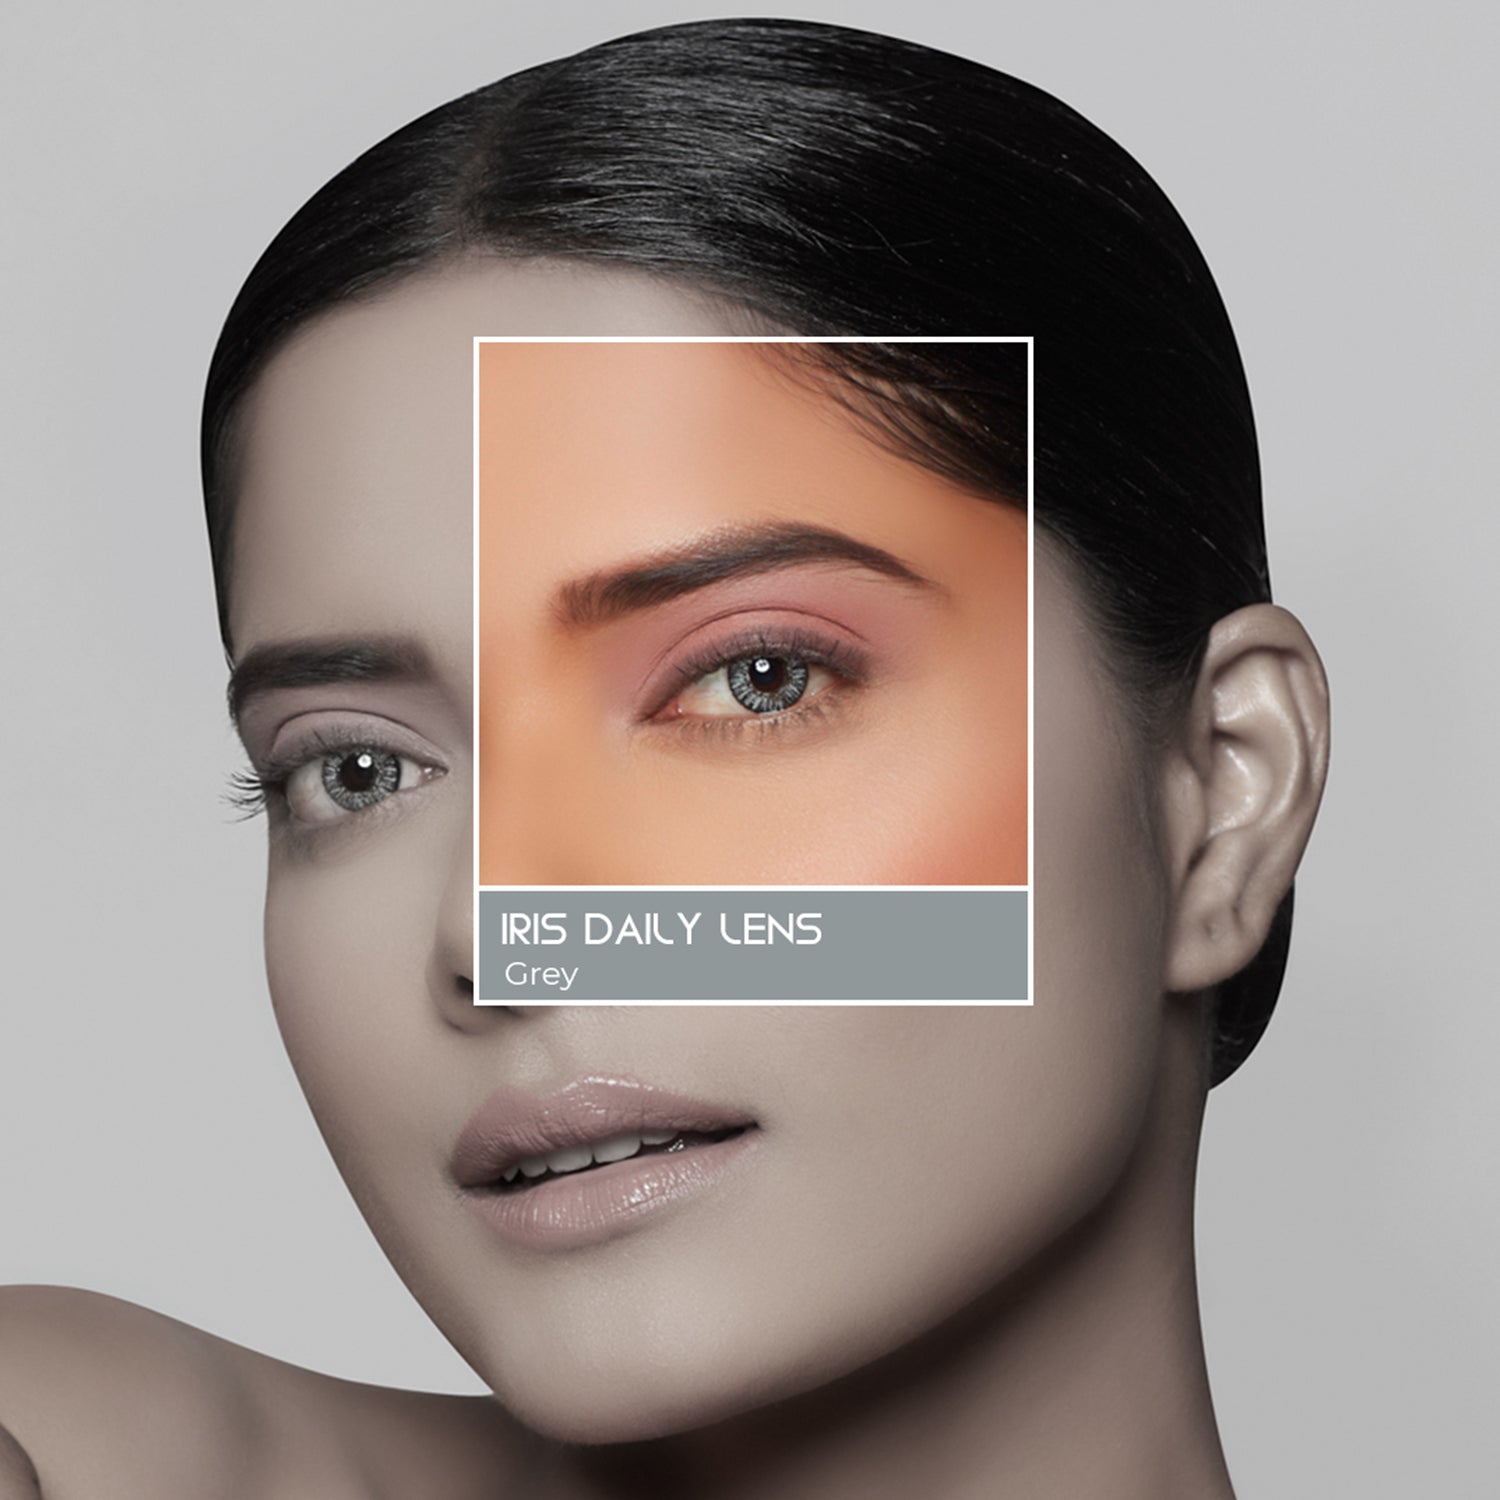 PAC Cosmetics IRIS Premium Contact Lenses (1 Pairs) #Color_Grey